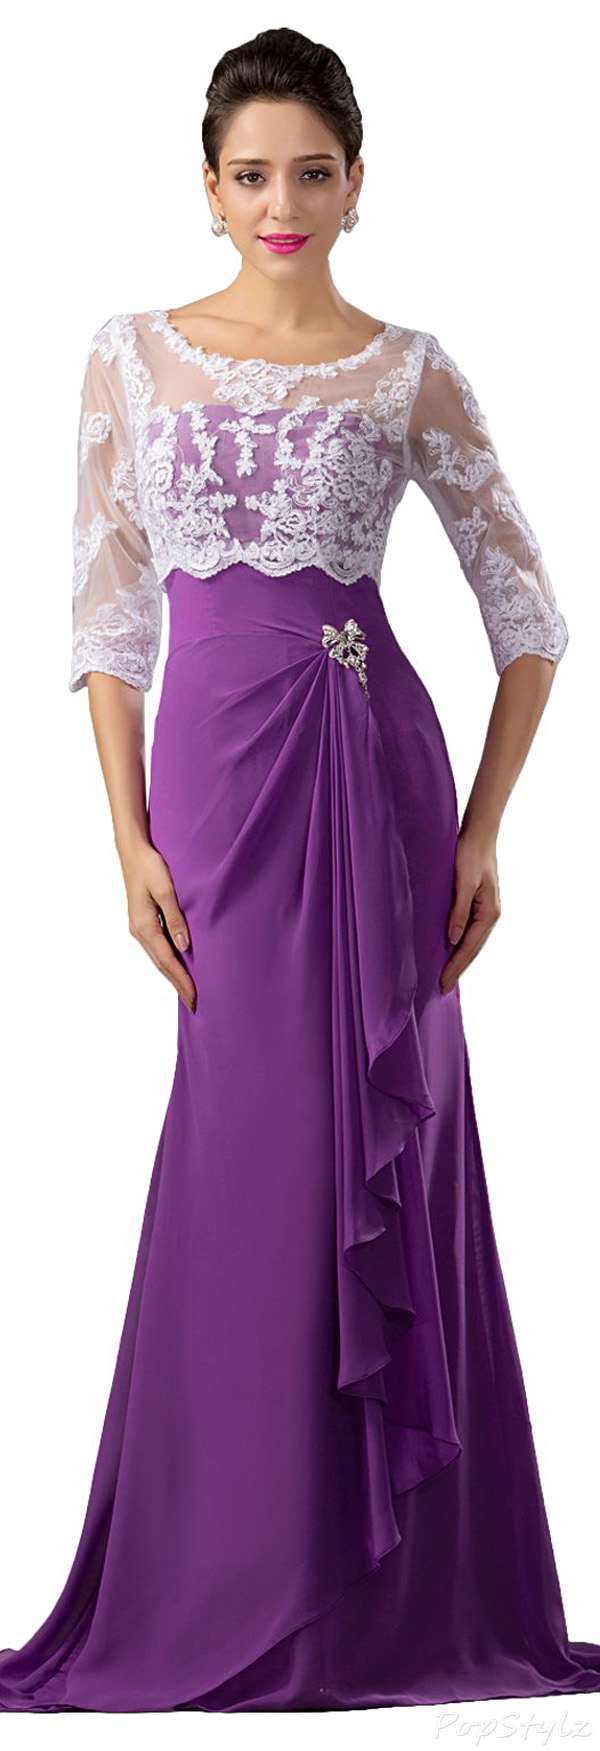 Sunvary Purple & White Chiffon Dress & Lace Jacket